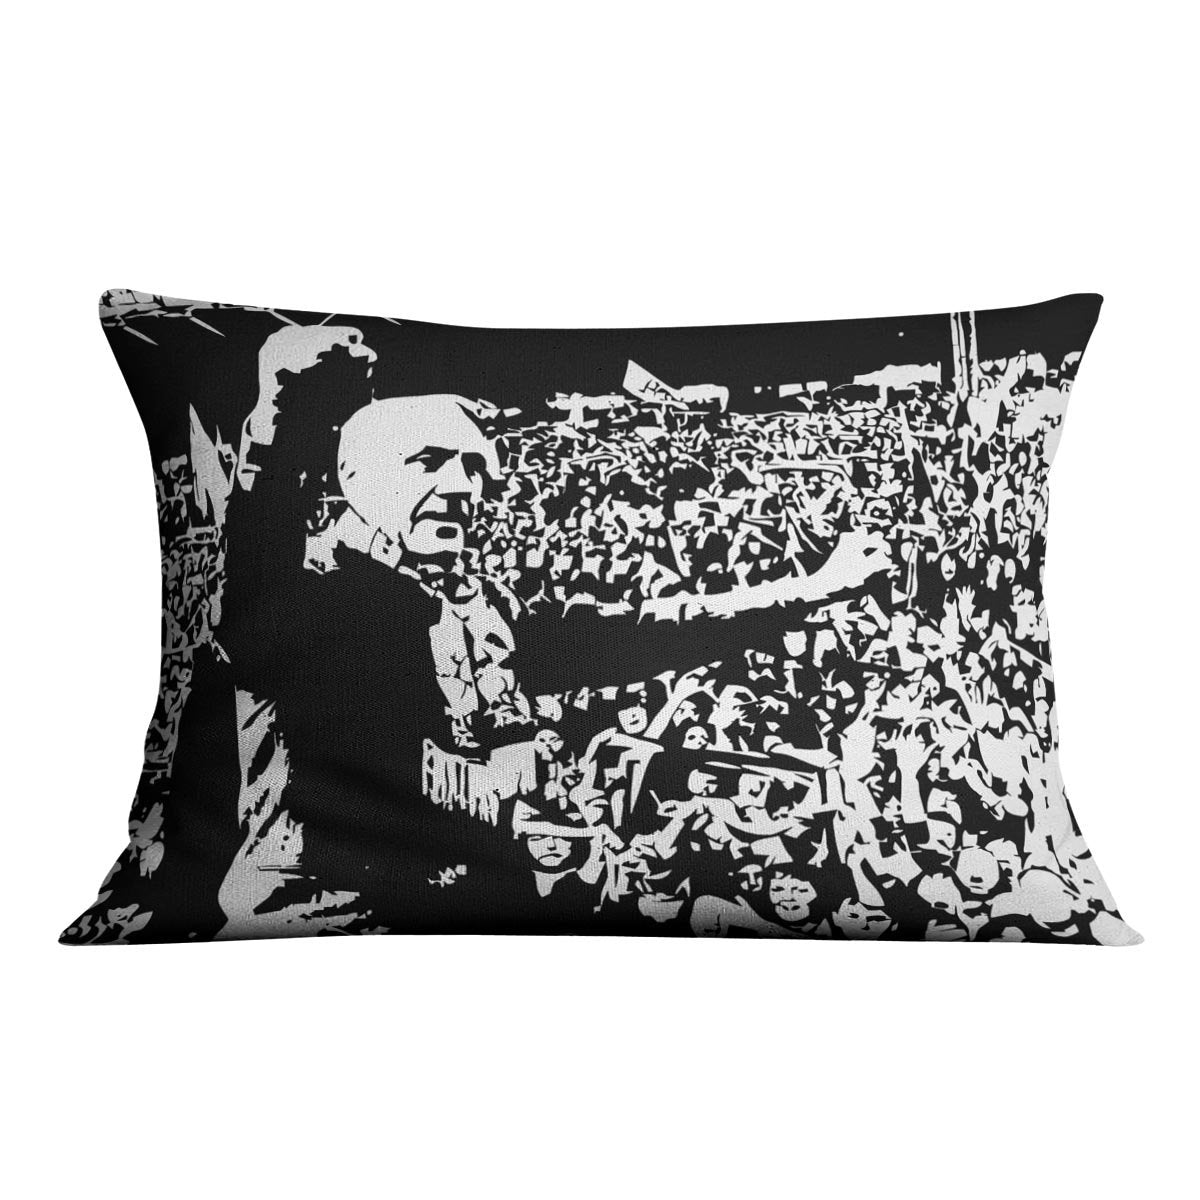 Bill Shankly Cushion